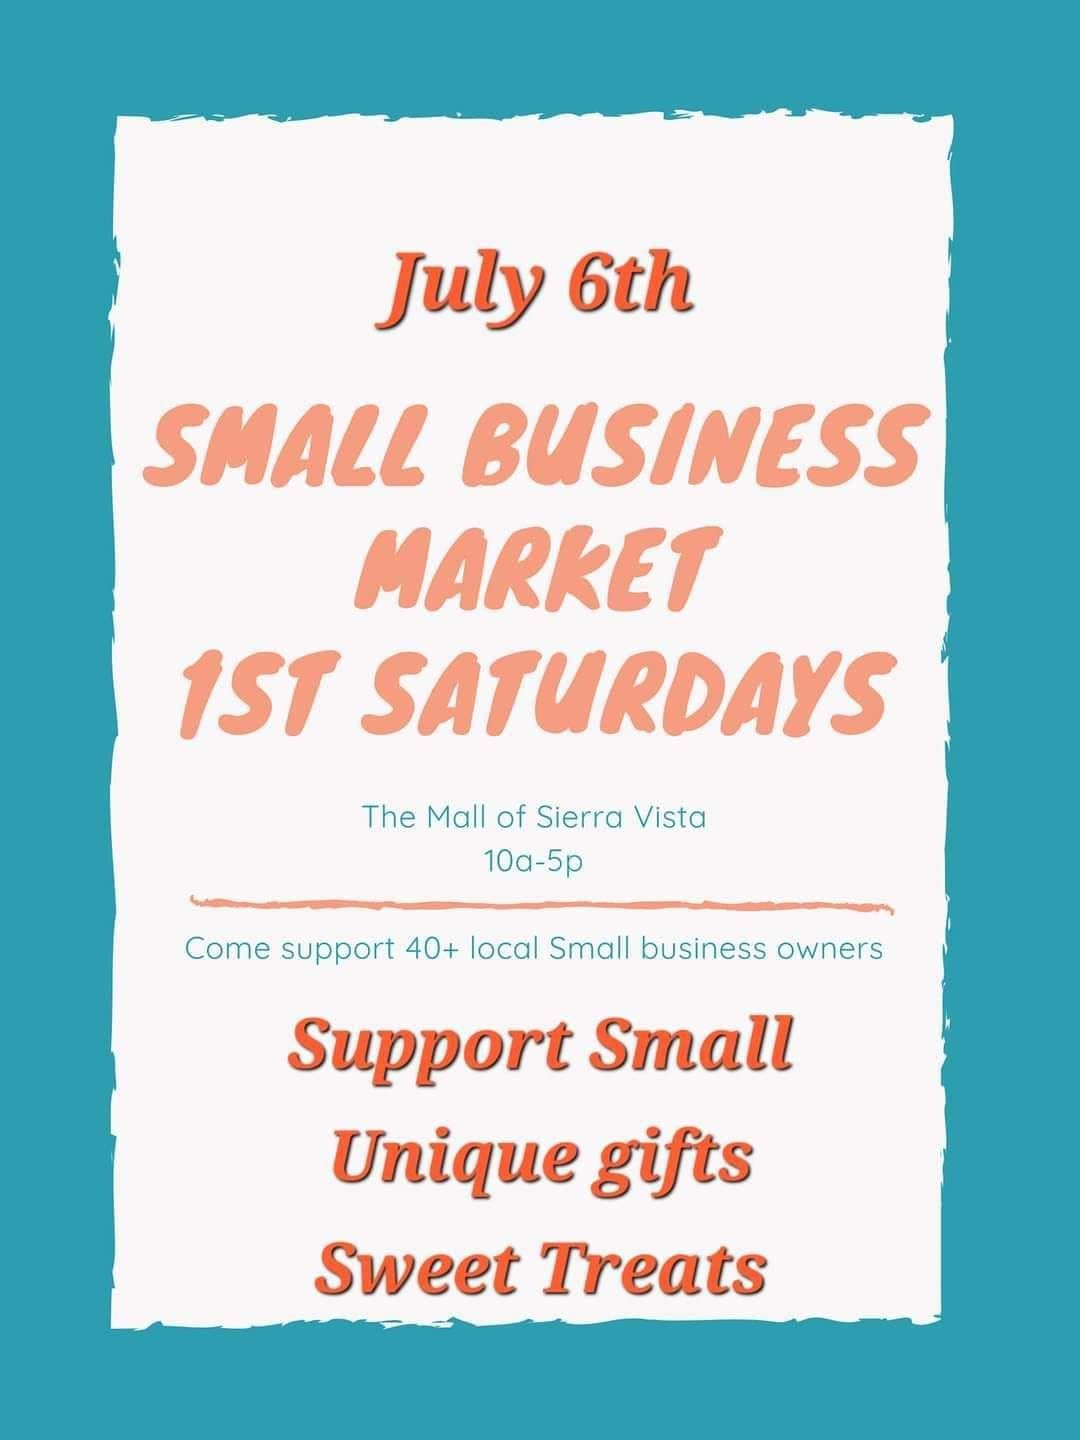 Small Business Market 1st Saturdays